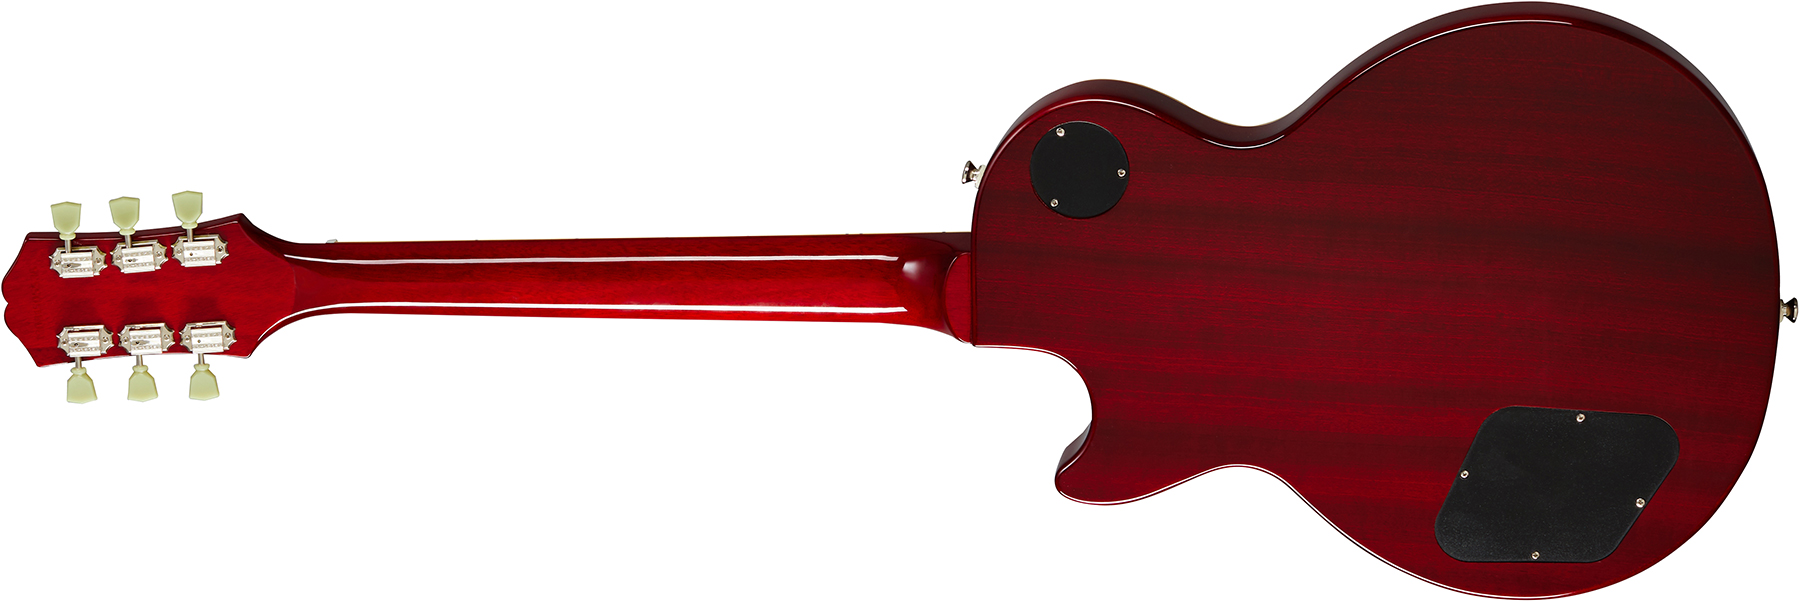 Epiphone Les Paul Standard 50s 2h Ht Rw - Heritage Cherry Sunburst - Guitarra eléctrica de corte único. - Variation 1